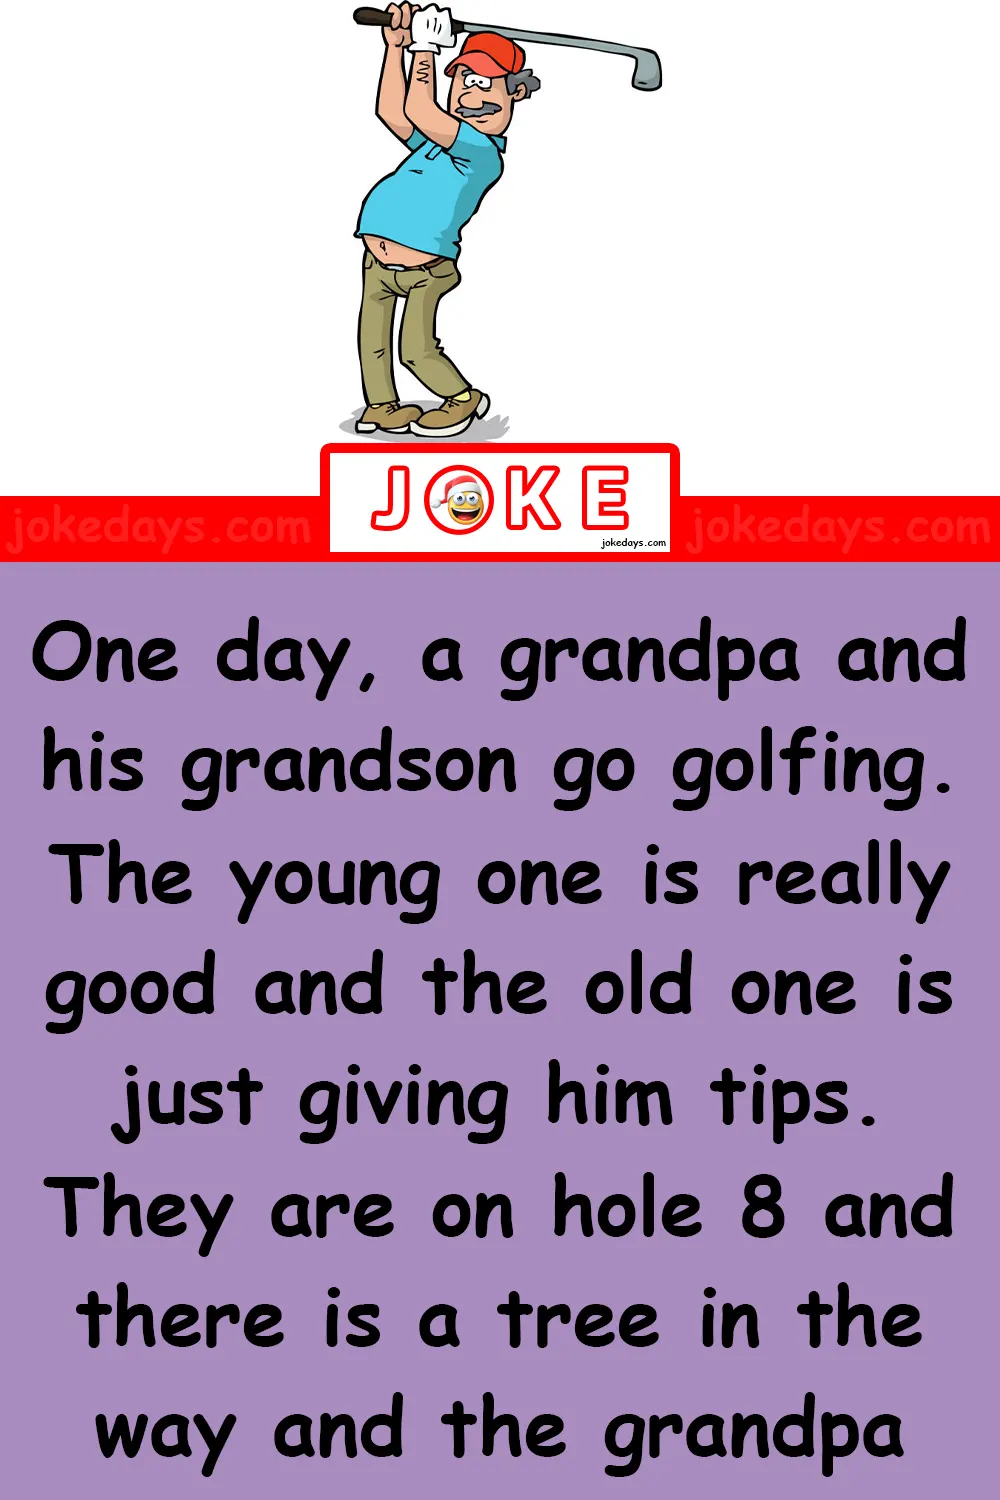 A Grandpa and His Grandson